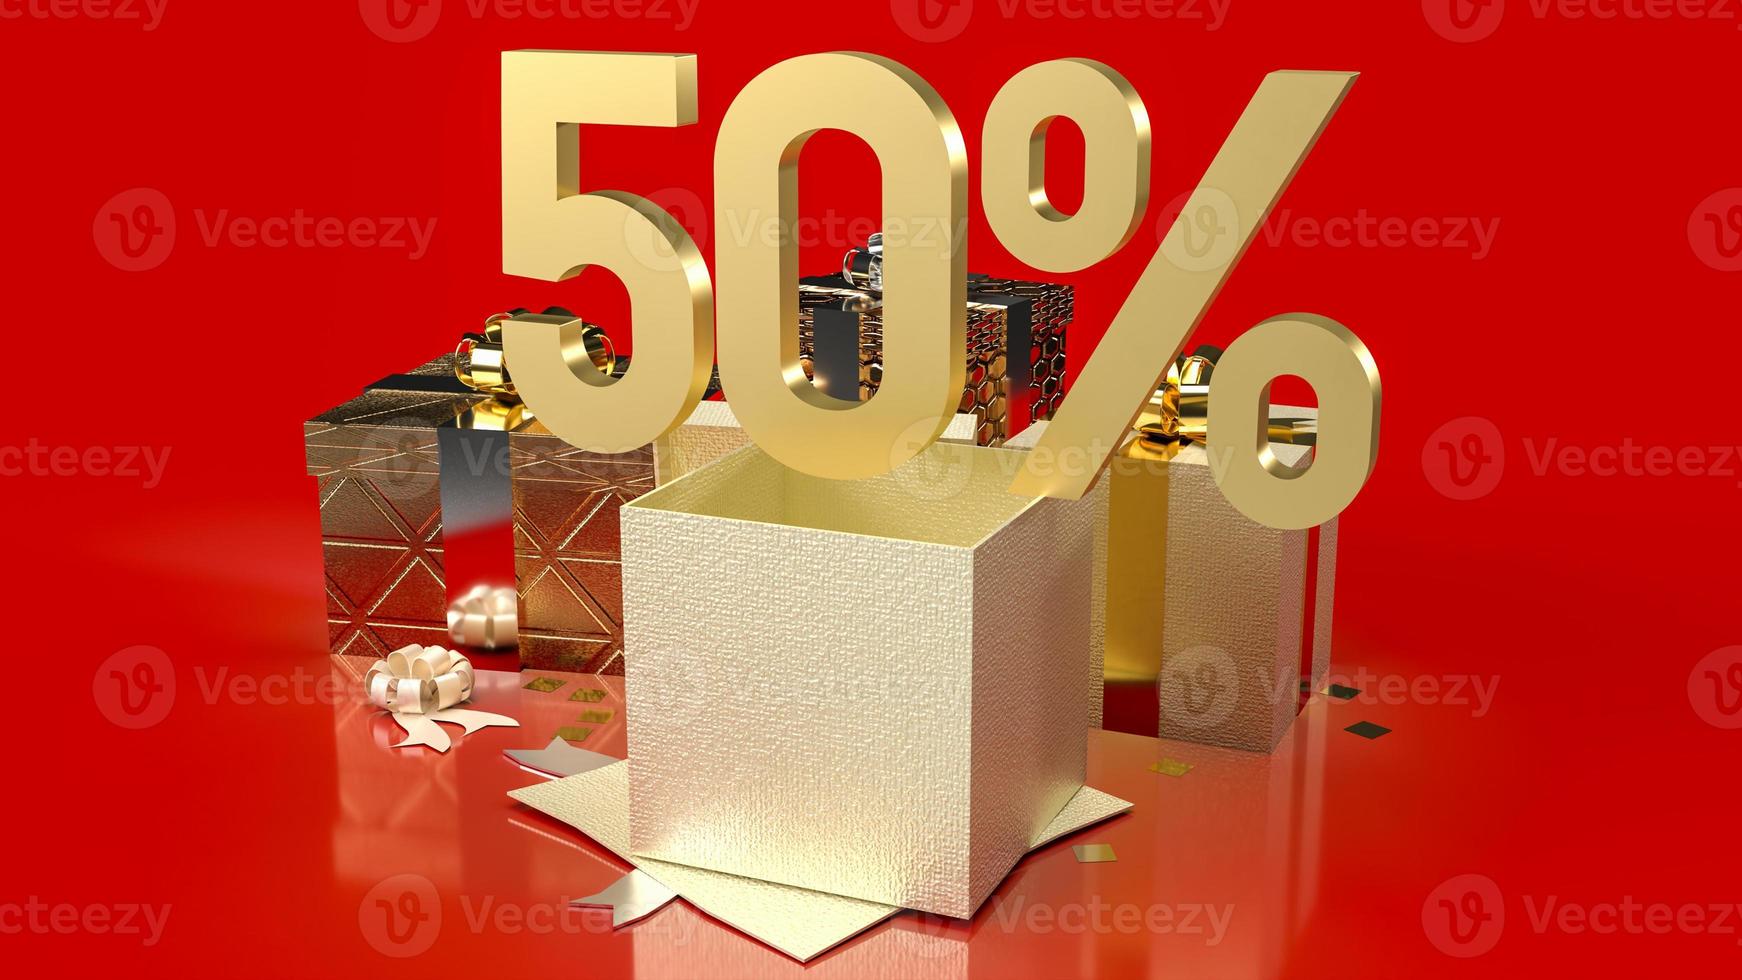 het gouden aantal procent en geschenkdozen op rode achtergrond voor verkooppromotie zakelijke inhoud 3D-rendering foto